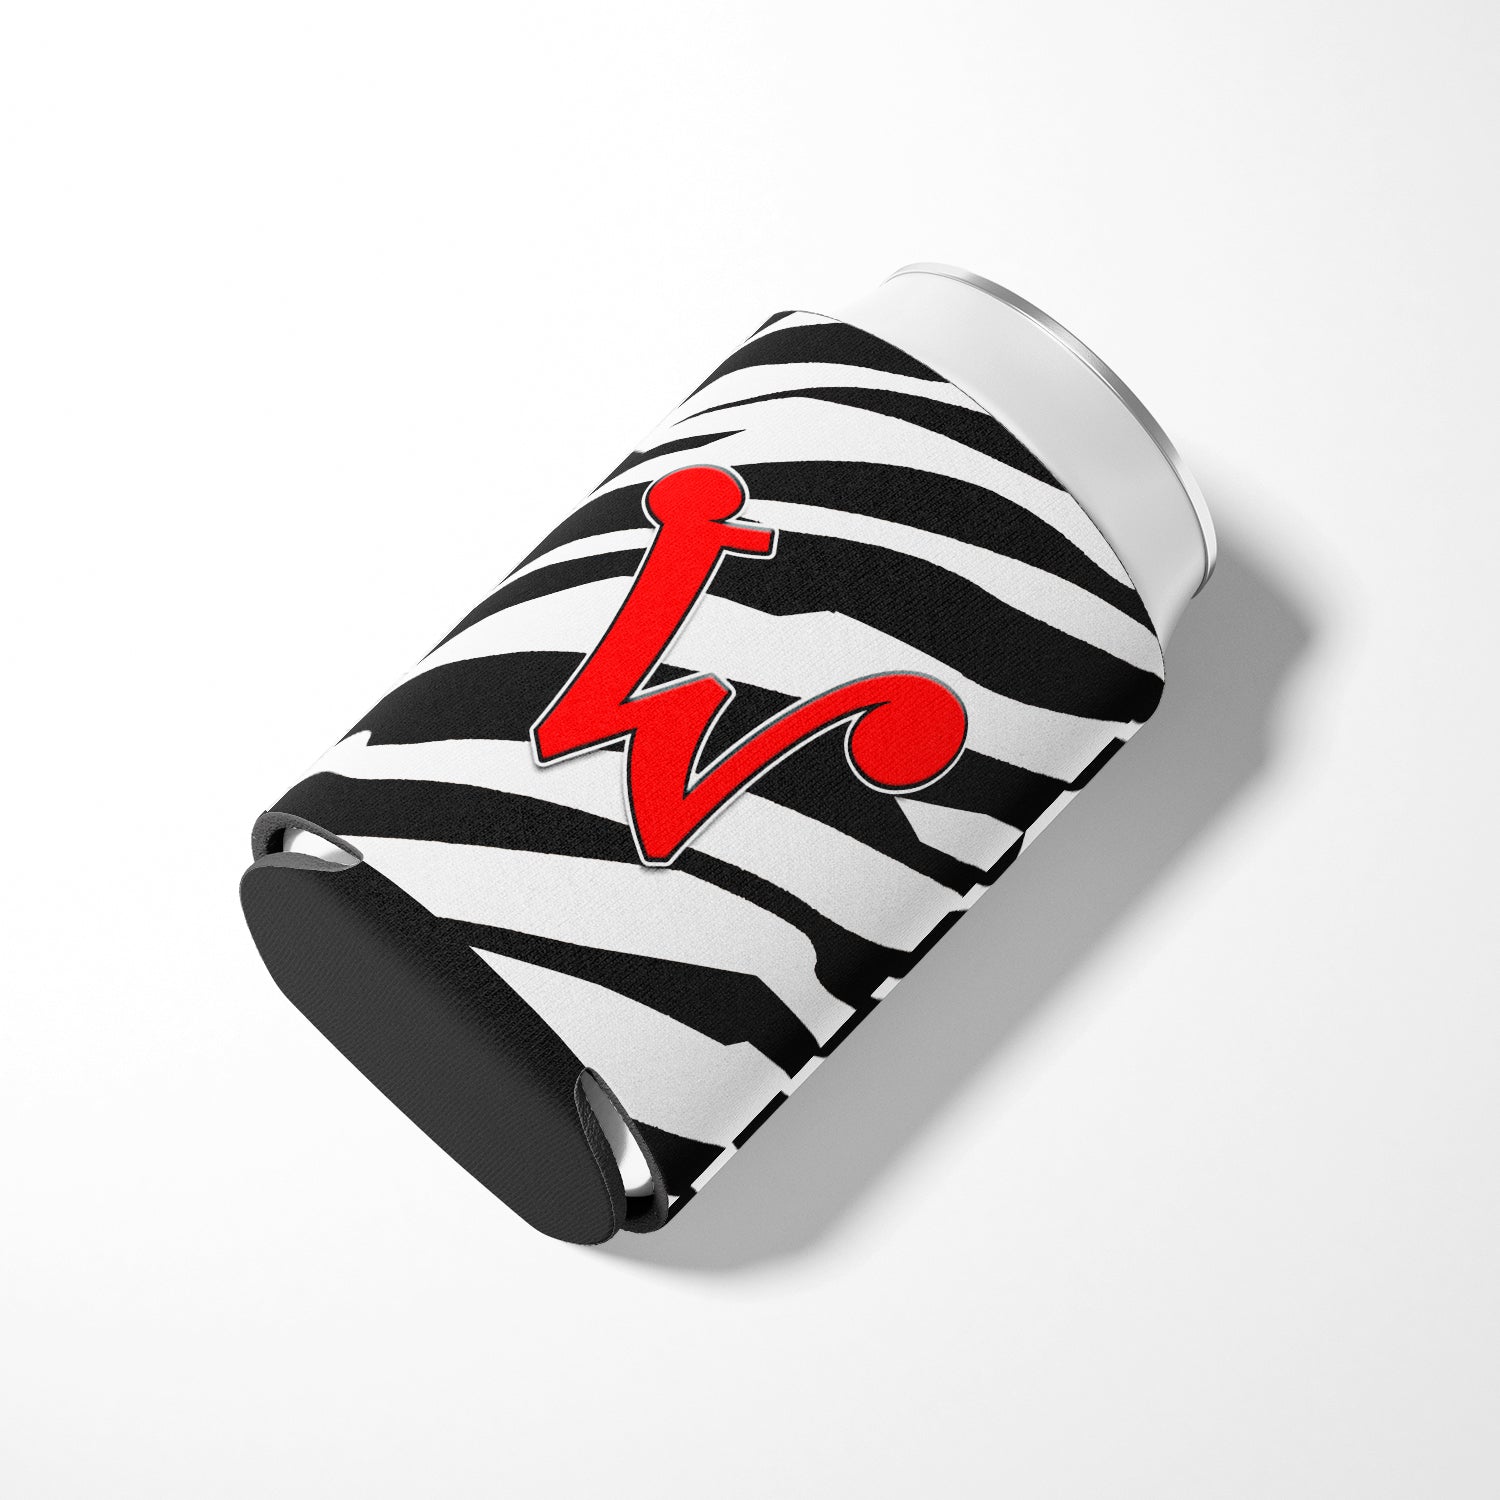 Letter W Initial Monogram - Zebra Red Can or Bottle Beverage Insulator Hugger.